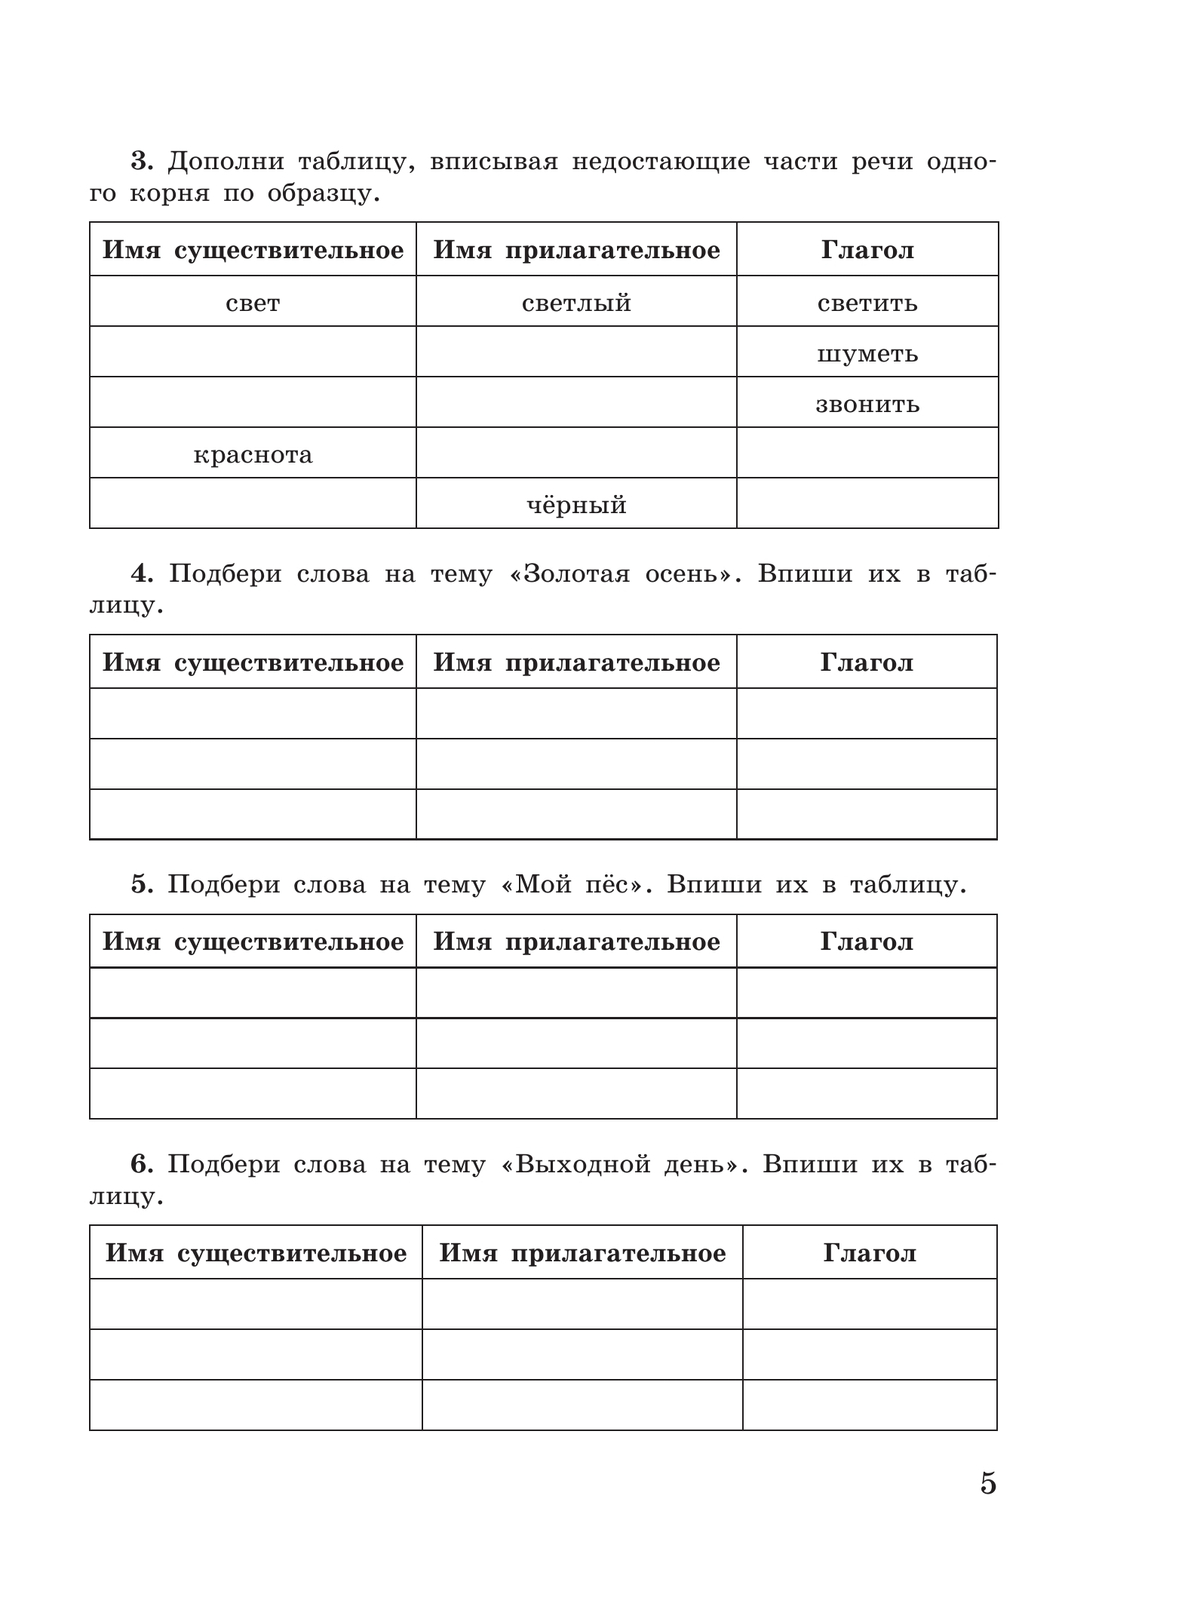 Русский язык. Имя существительное. 5-9 классы. Рабочая тетрадь 2 (для обучающихся с интеллектуальными нарушениями) 11